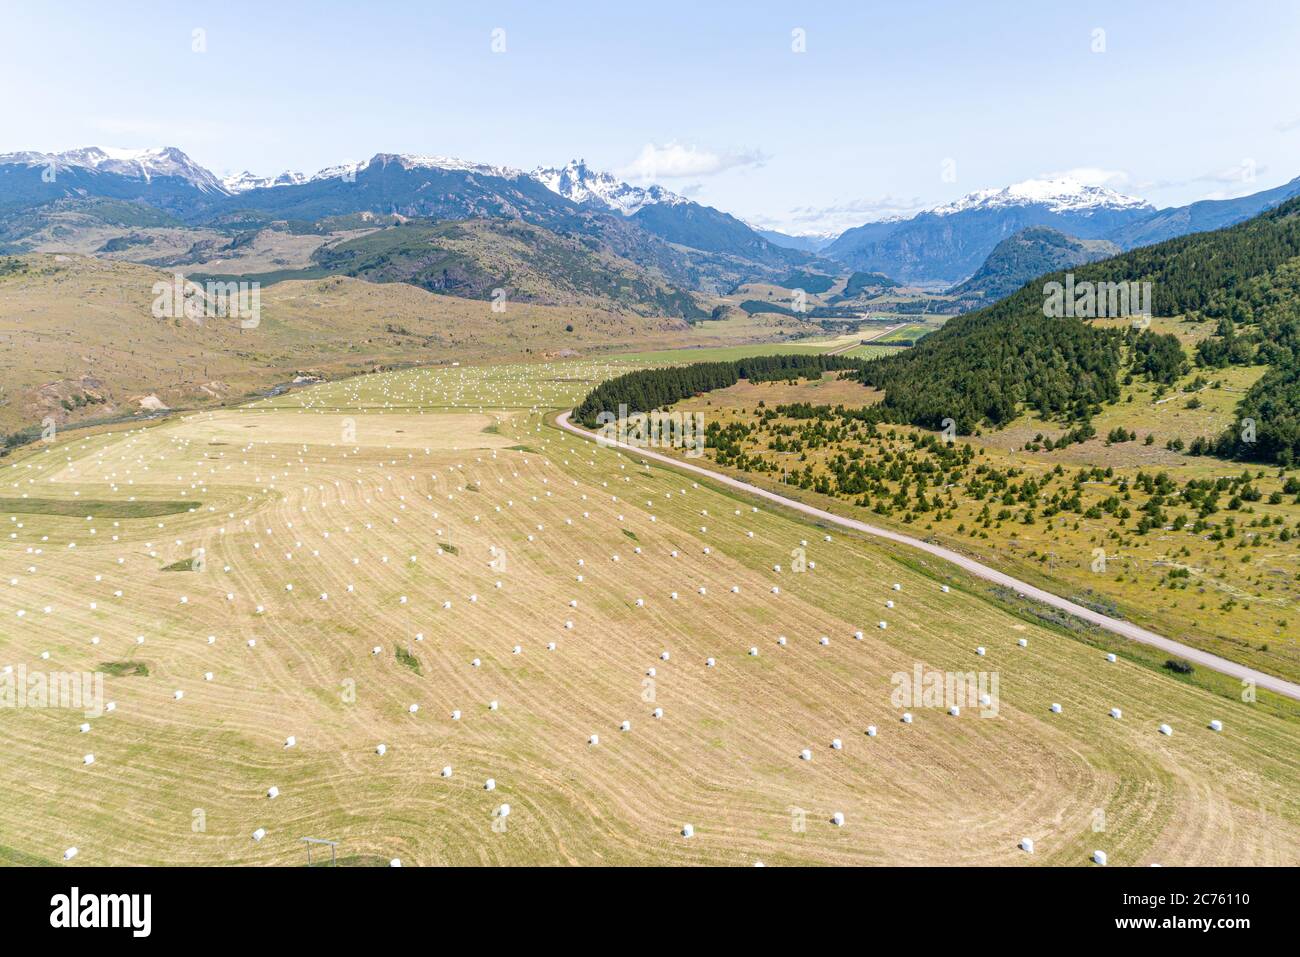 Vue aérienne du champ de foin récolté avec des montagnes en arrière-plan, route de Carretera Austral - Coyhaique, Aysén, Chili Banque D'Images